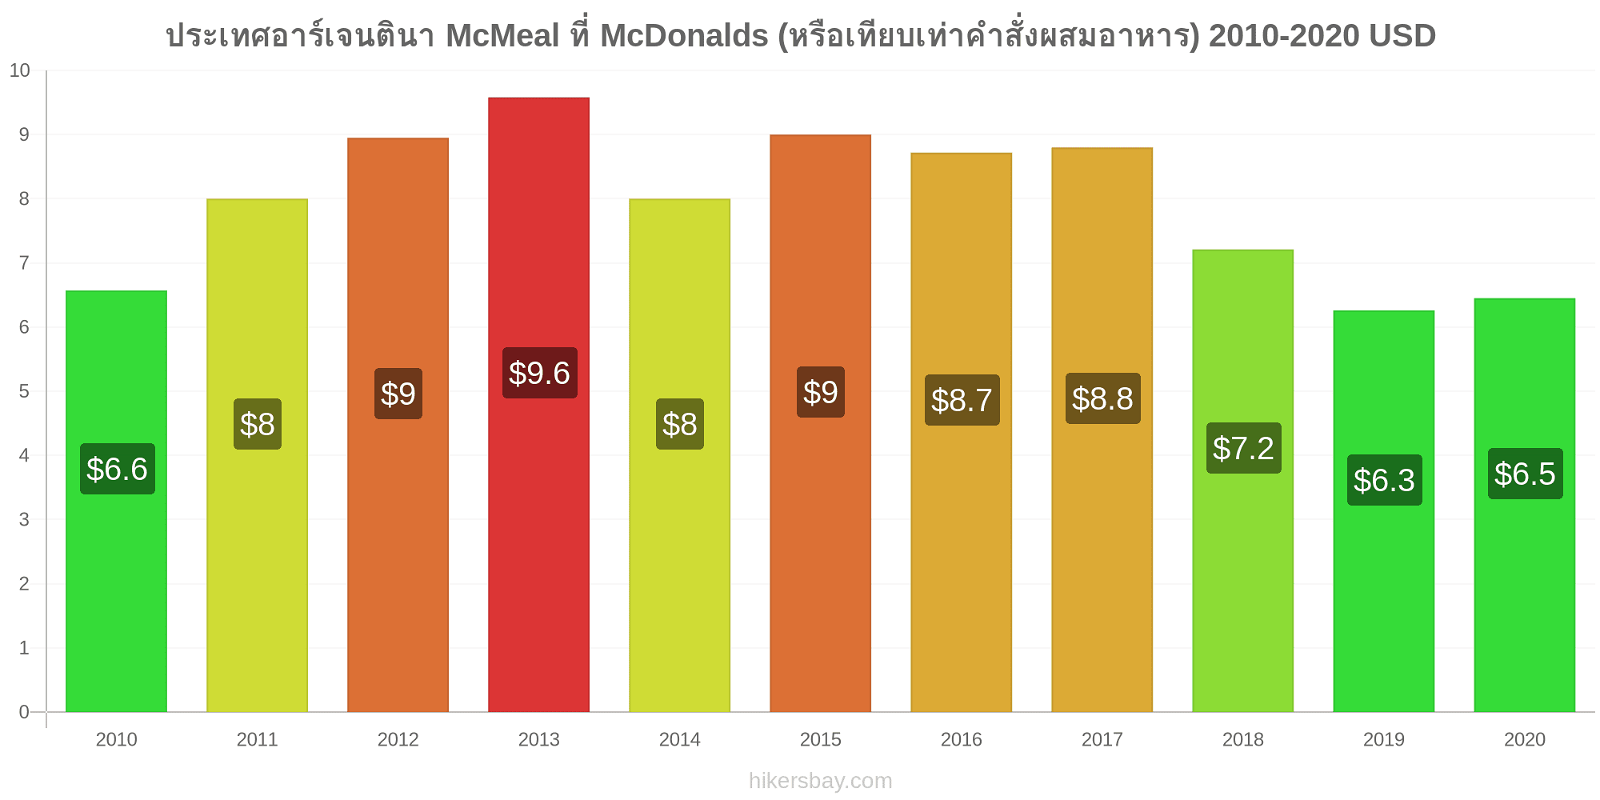 ประเทศอาร์เจนตินา การเปลี่ยนแปลงราคา McMeal ที่ McDonalds (หรือเทียบเท่าคำสั่งผสมอาหาร) hikersbay.com